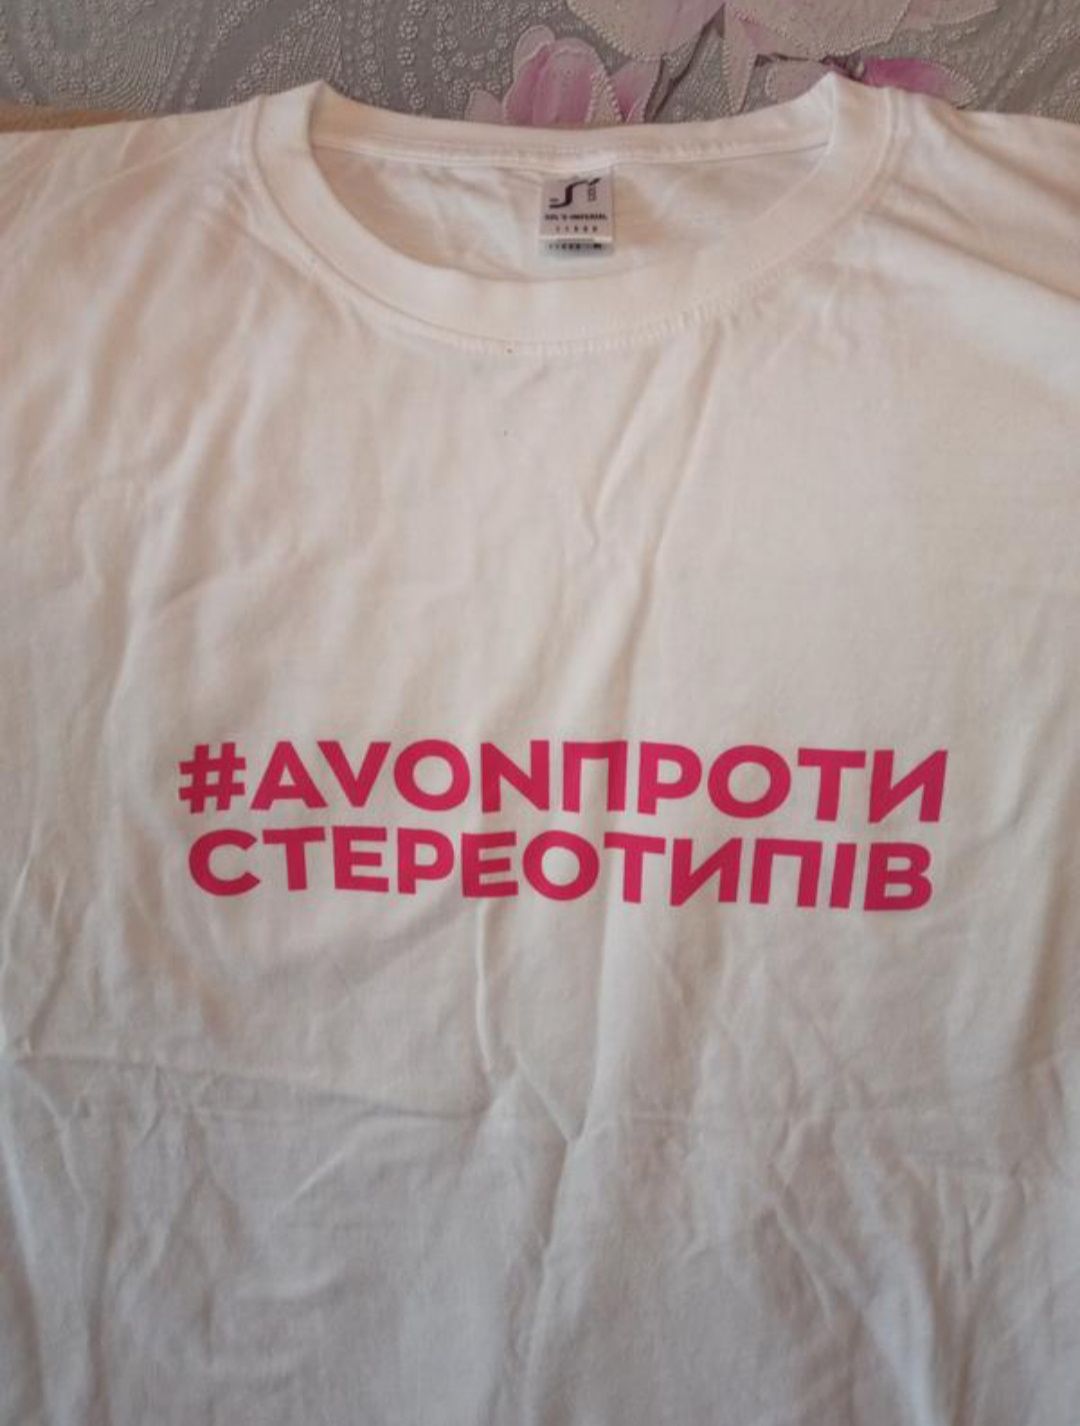 Жіноча футболка принт avon проти стереотипів